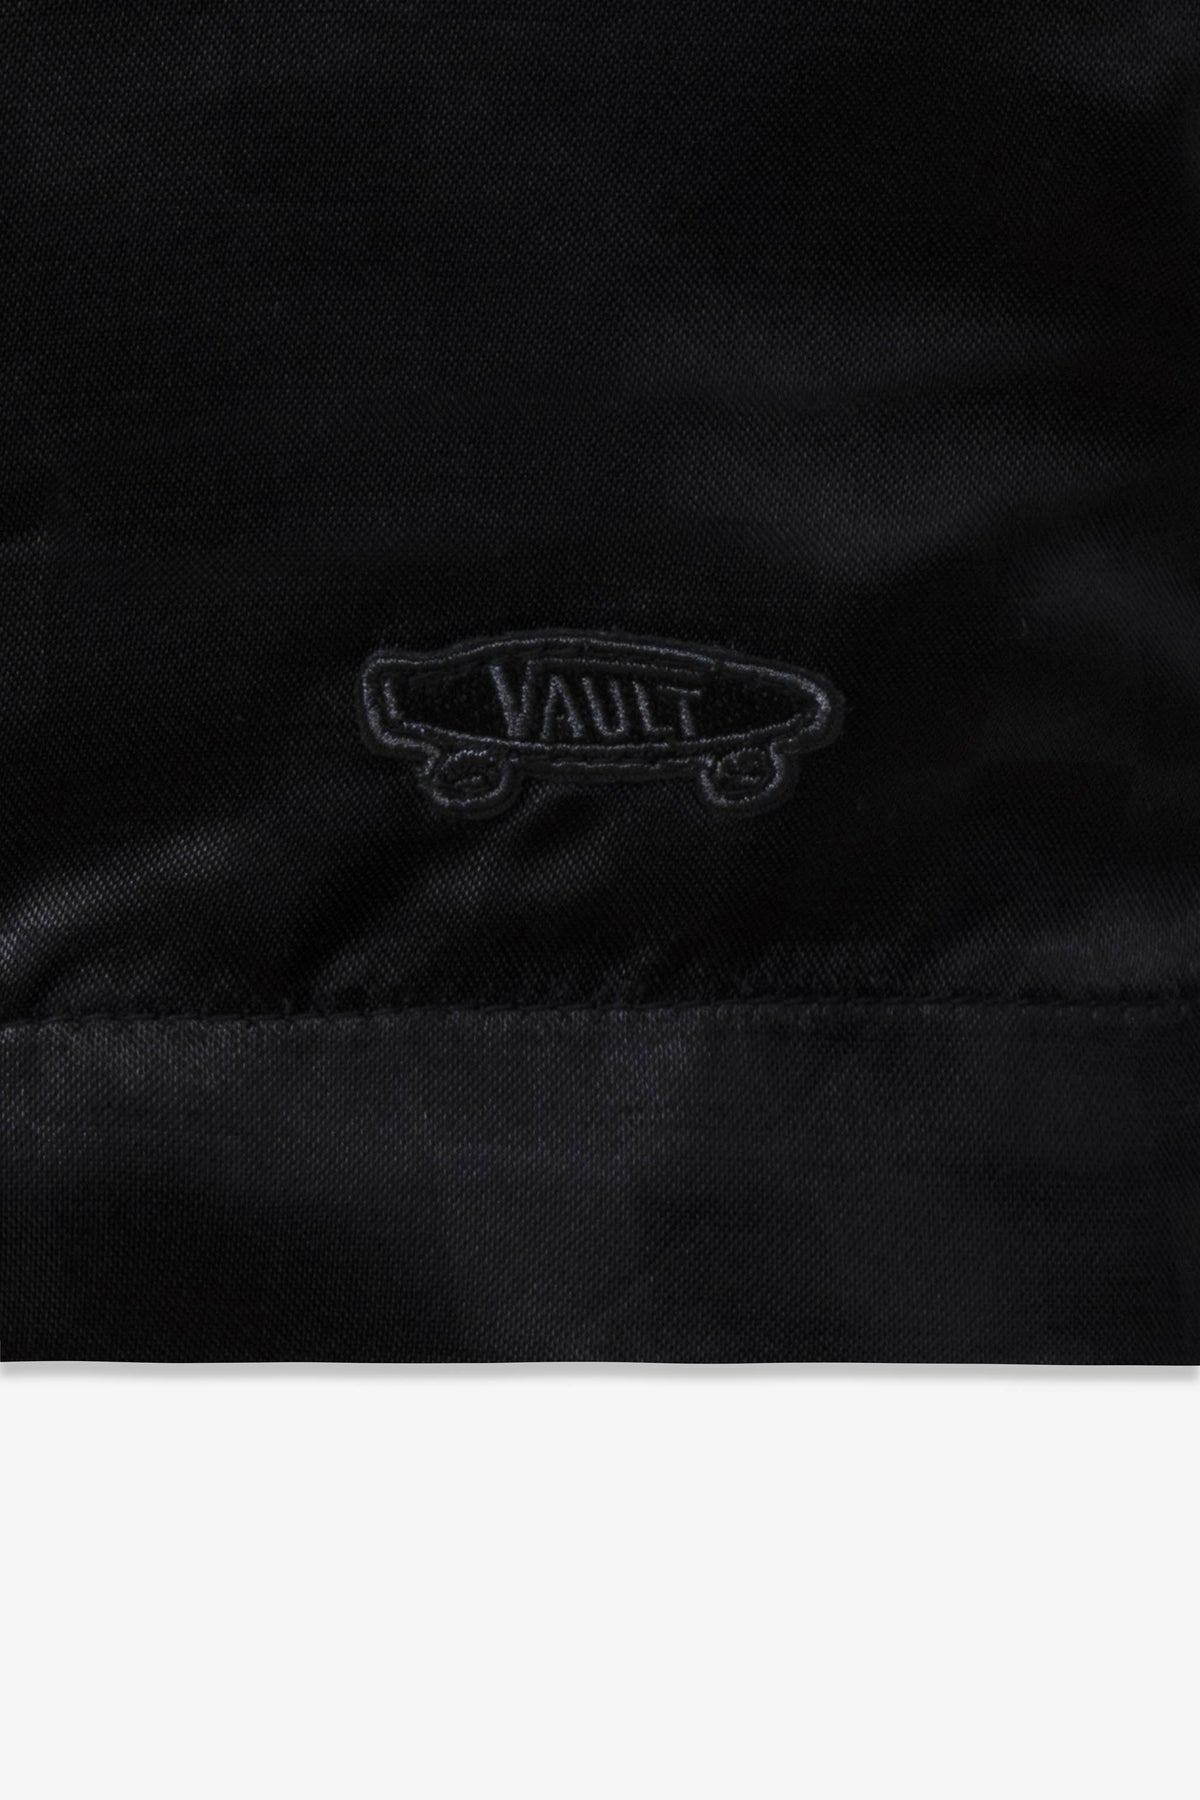 Vault by Vans x Goodfight Letterman Jacket